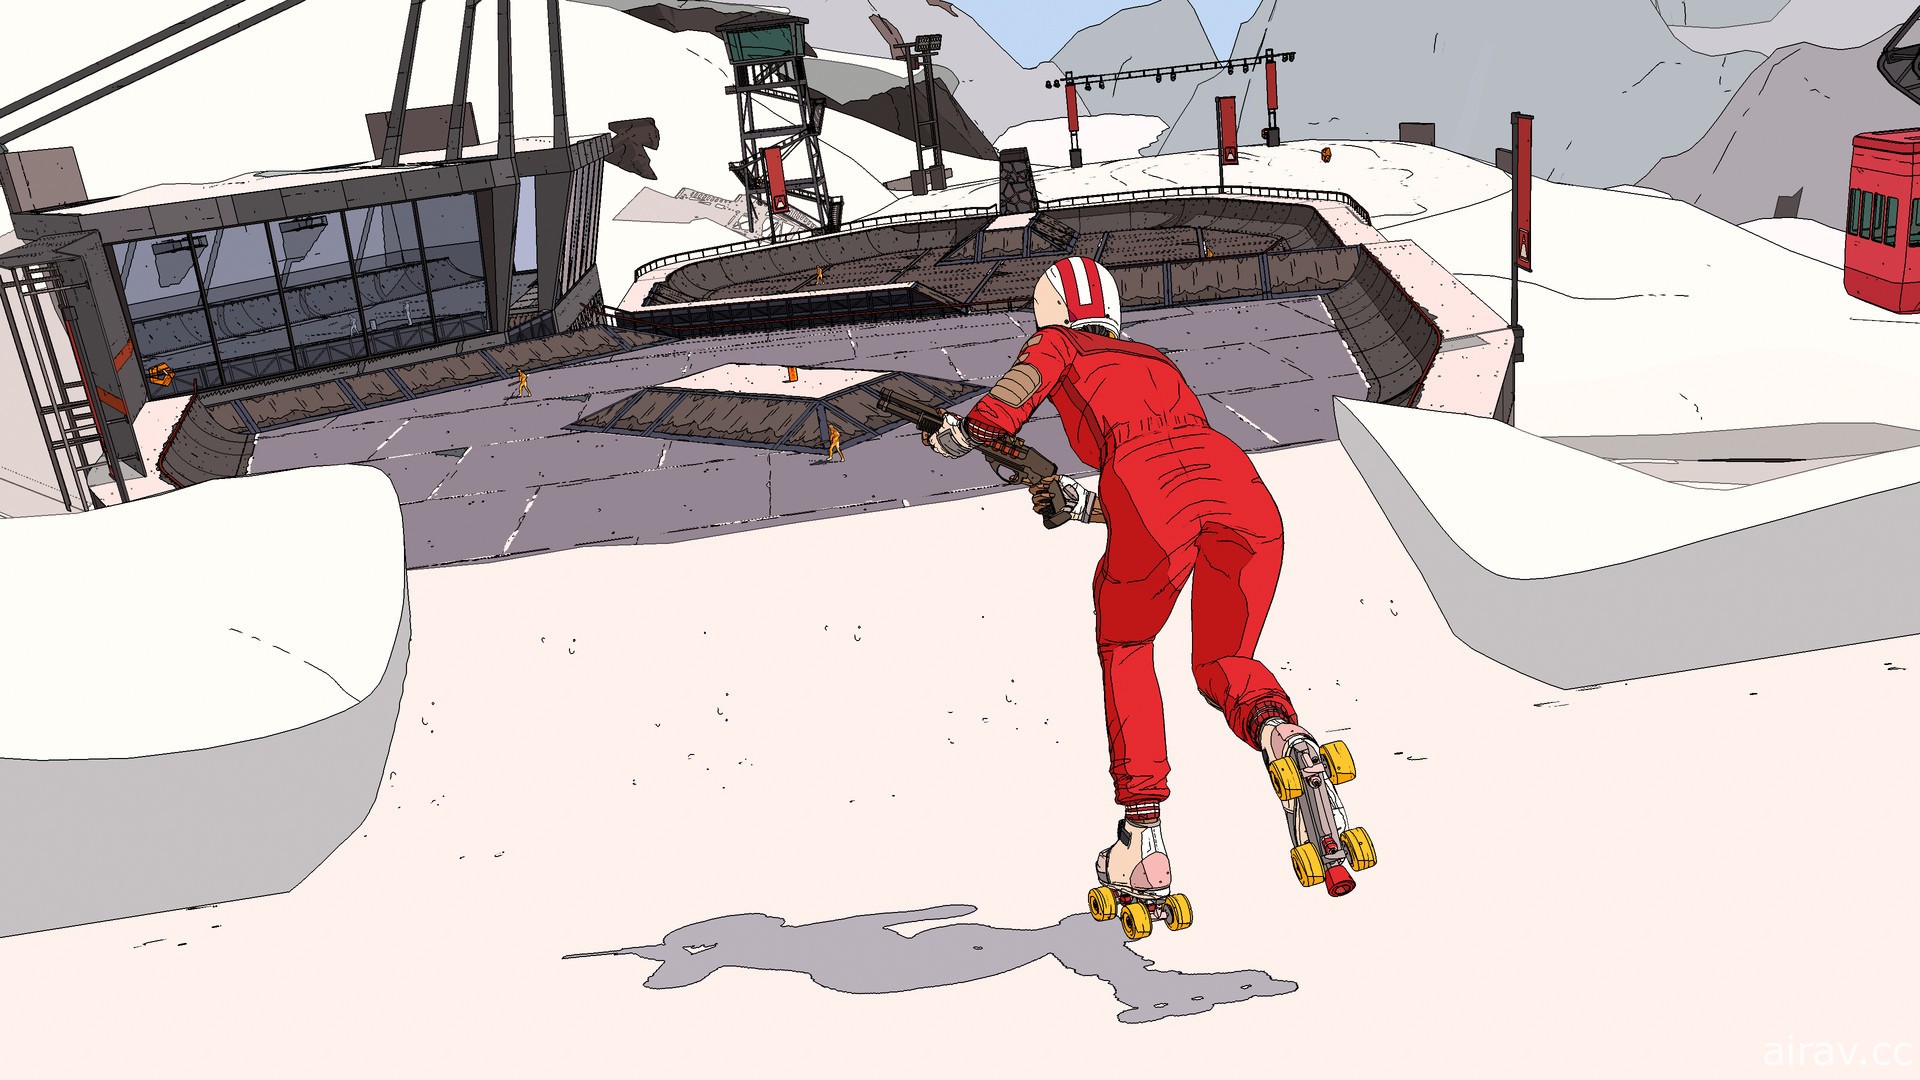 《欧利欧利世界》开发商打造未来风滑板射击游戏《室内滑轮赛》将于今年8月推出